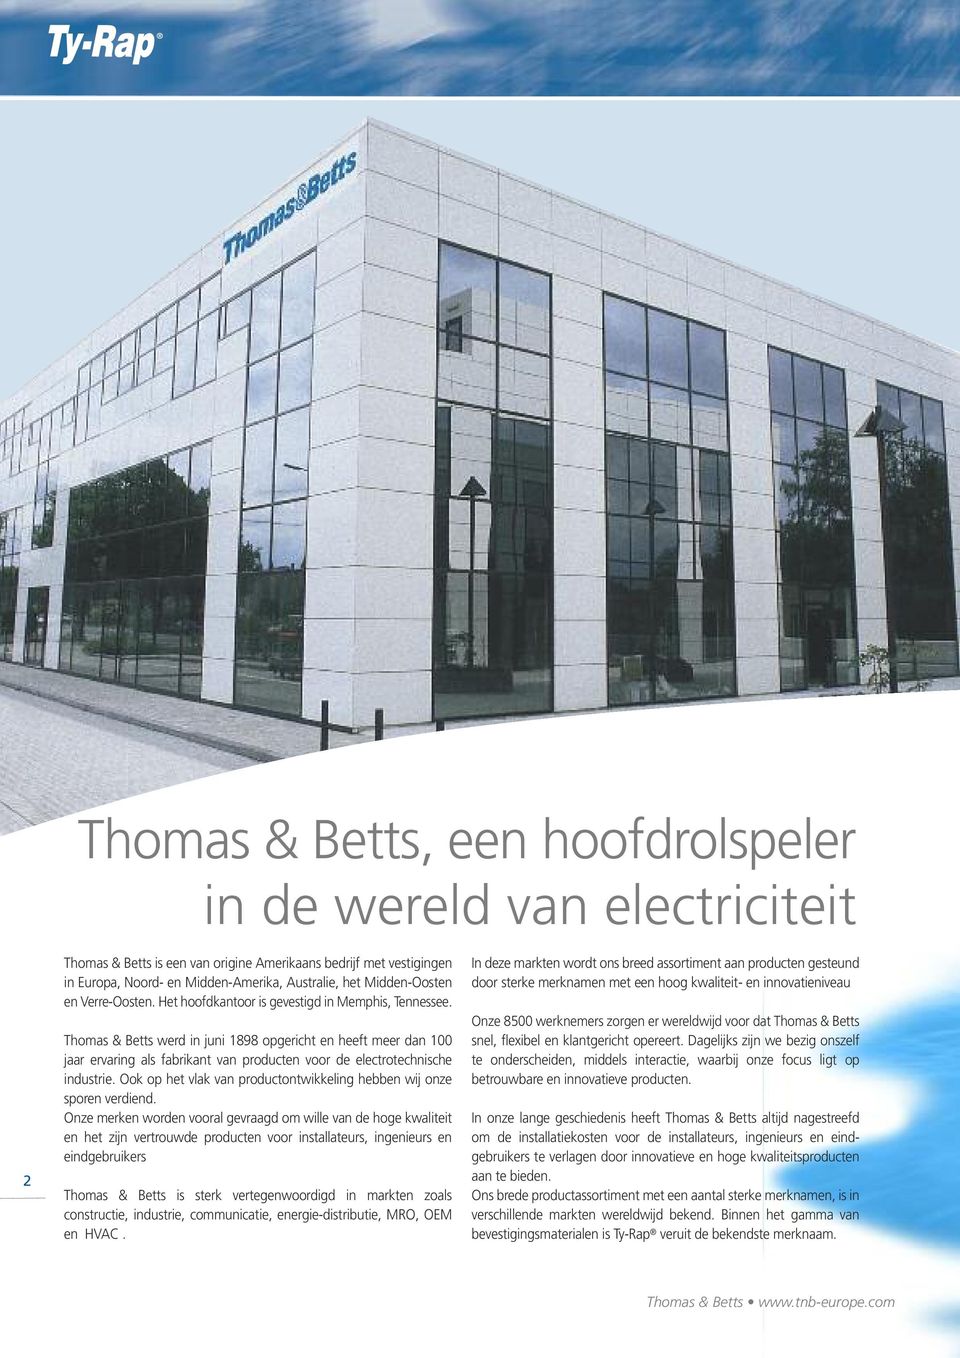 Thomas & Betts werd in juni 1898 opgericht en heeft meer dan 100 jaar ervaring als fabrikant van producten voor de electrotechnische industrie.